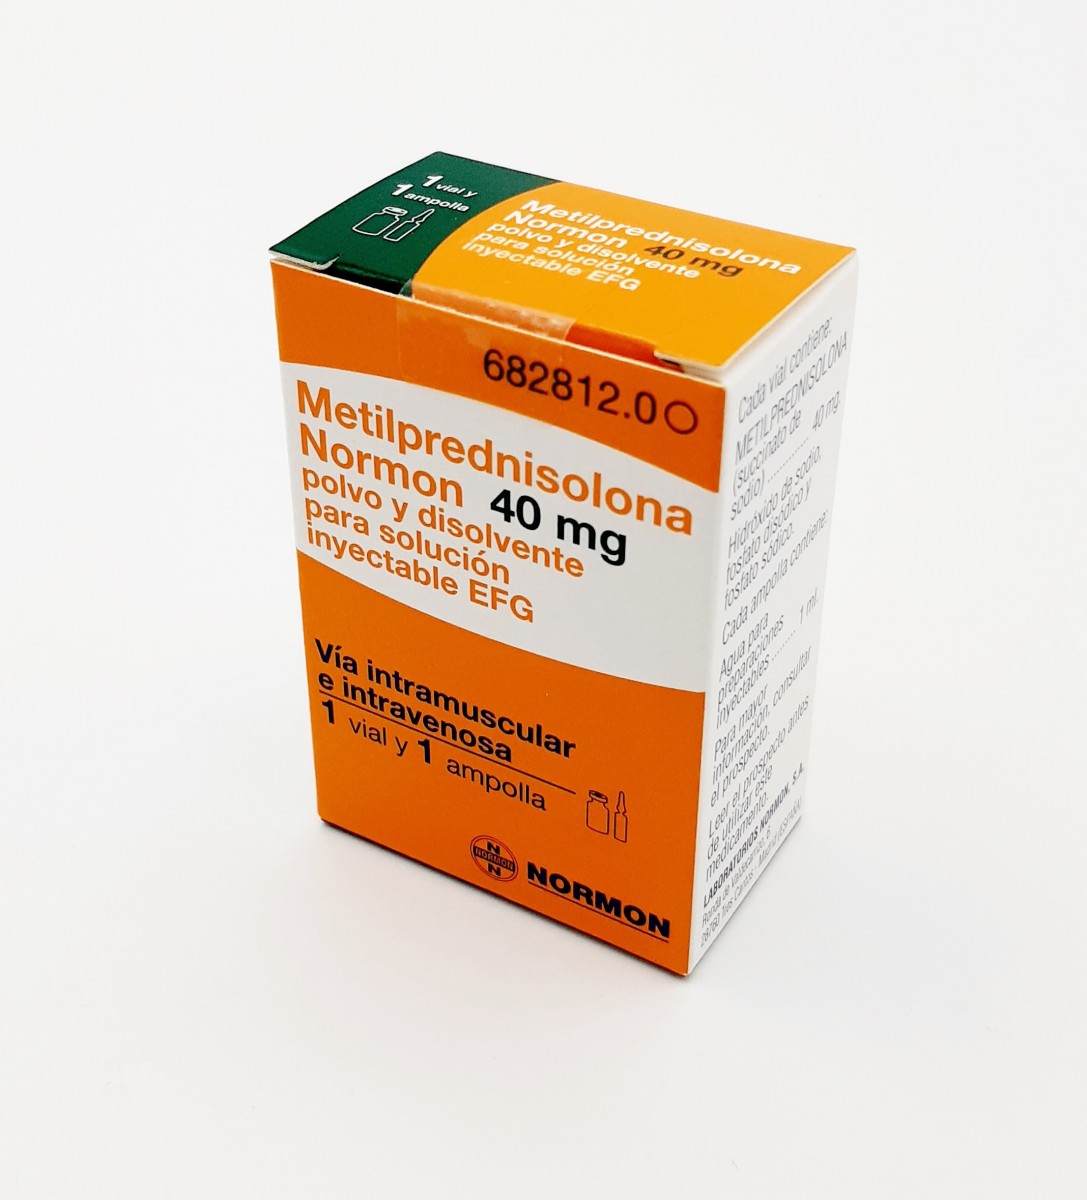 METILPREDNISOLONA NORMON 40 mg POLVO Y DISOLVENTE PARA SOLUCION INYECTABLE EFG , 100 viales + 100 ampollas de disolvente fotografía del envase.